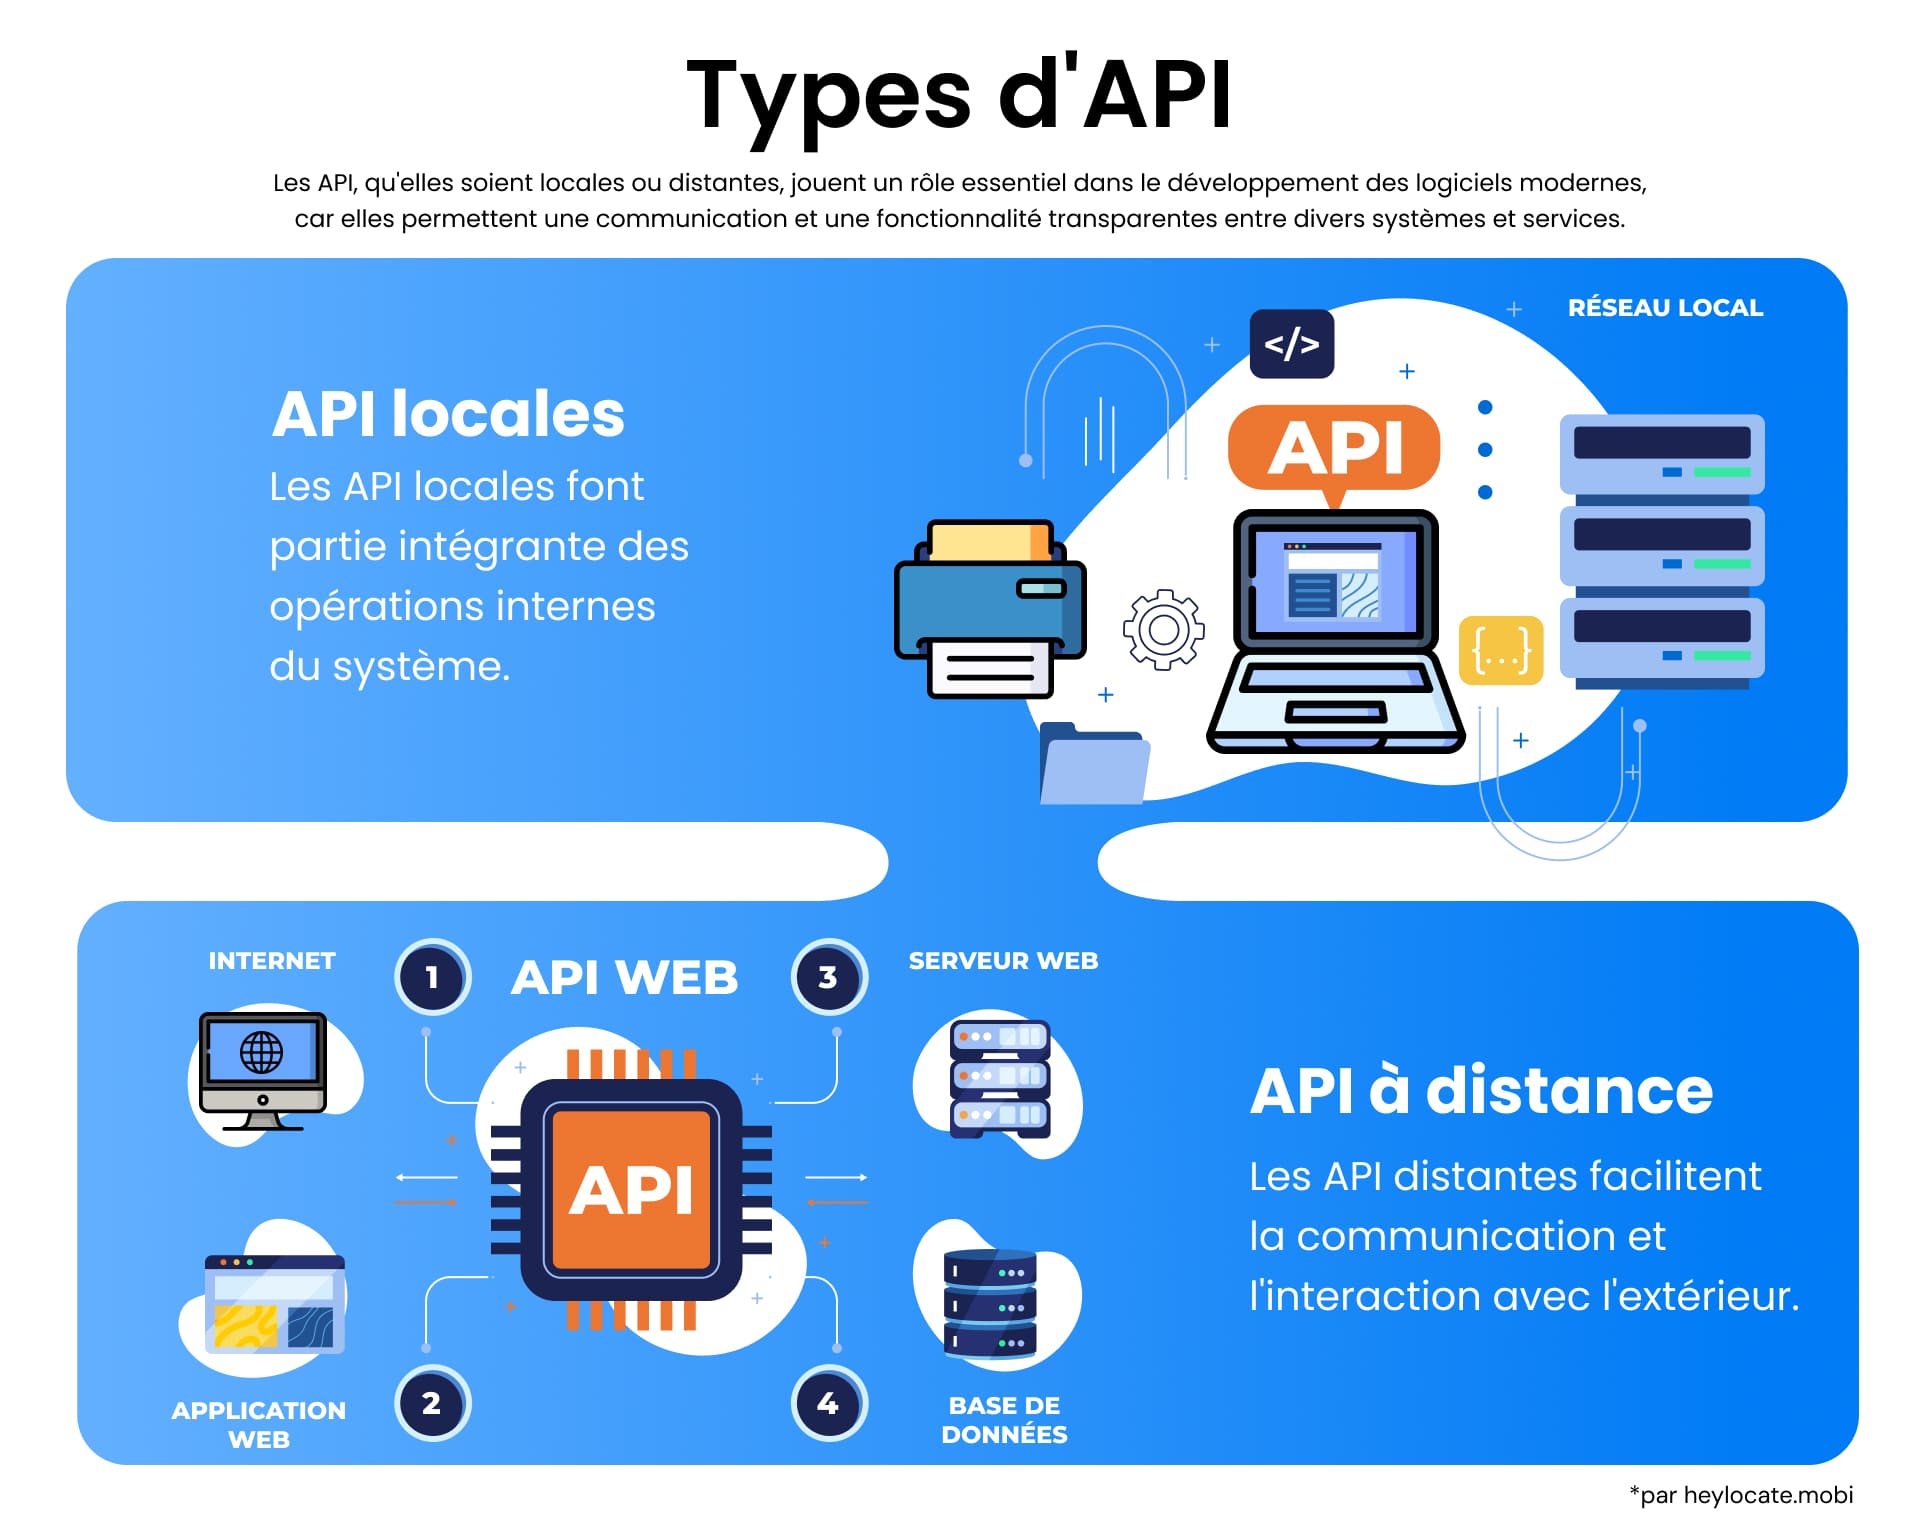 Graphique éducatif montrant deux types d'API : Les API locales, qui sont essentielles pour les opérations internes du système, et les API distantes, qui permettent la communication externe